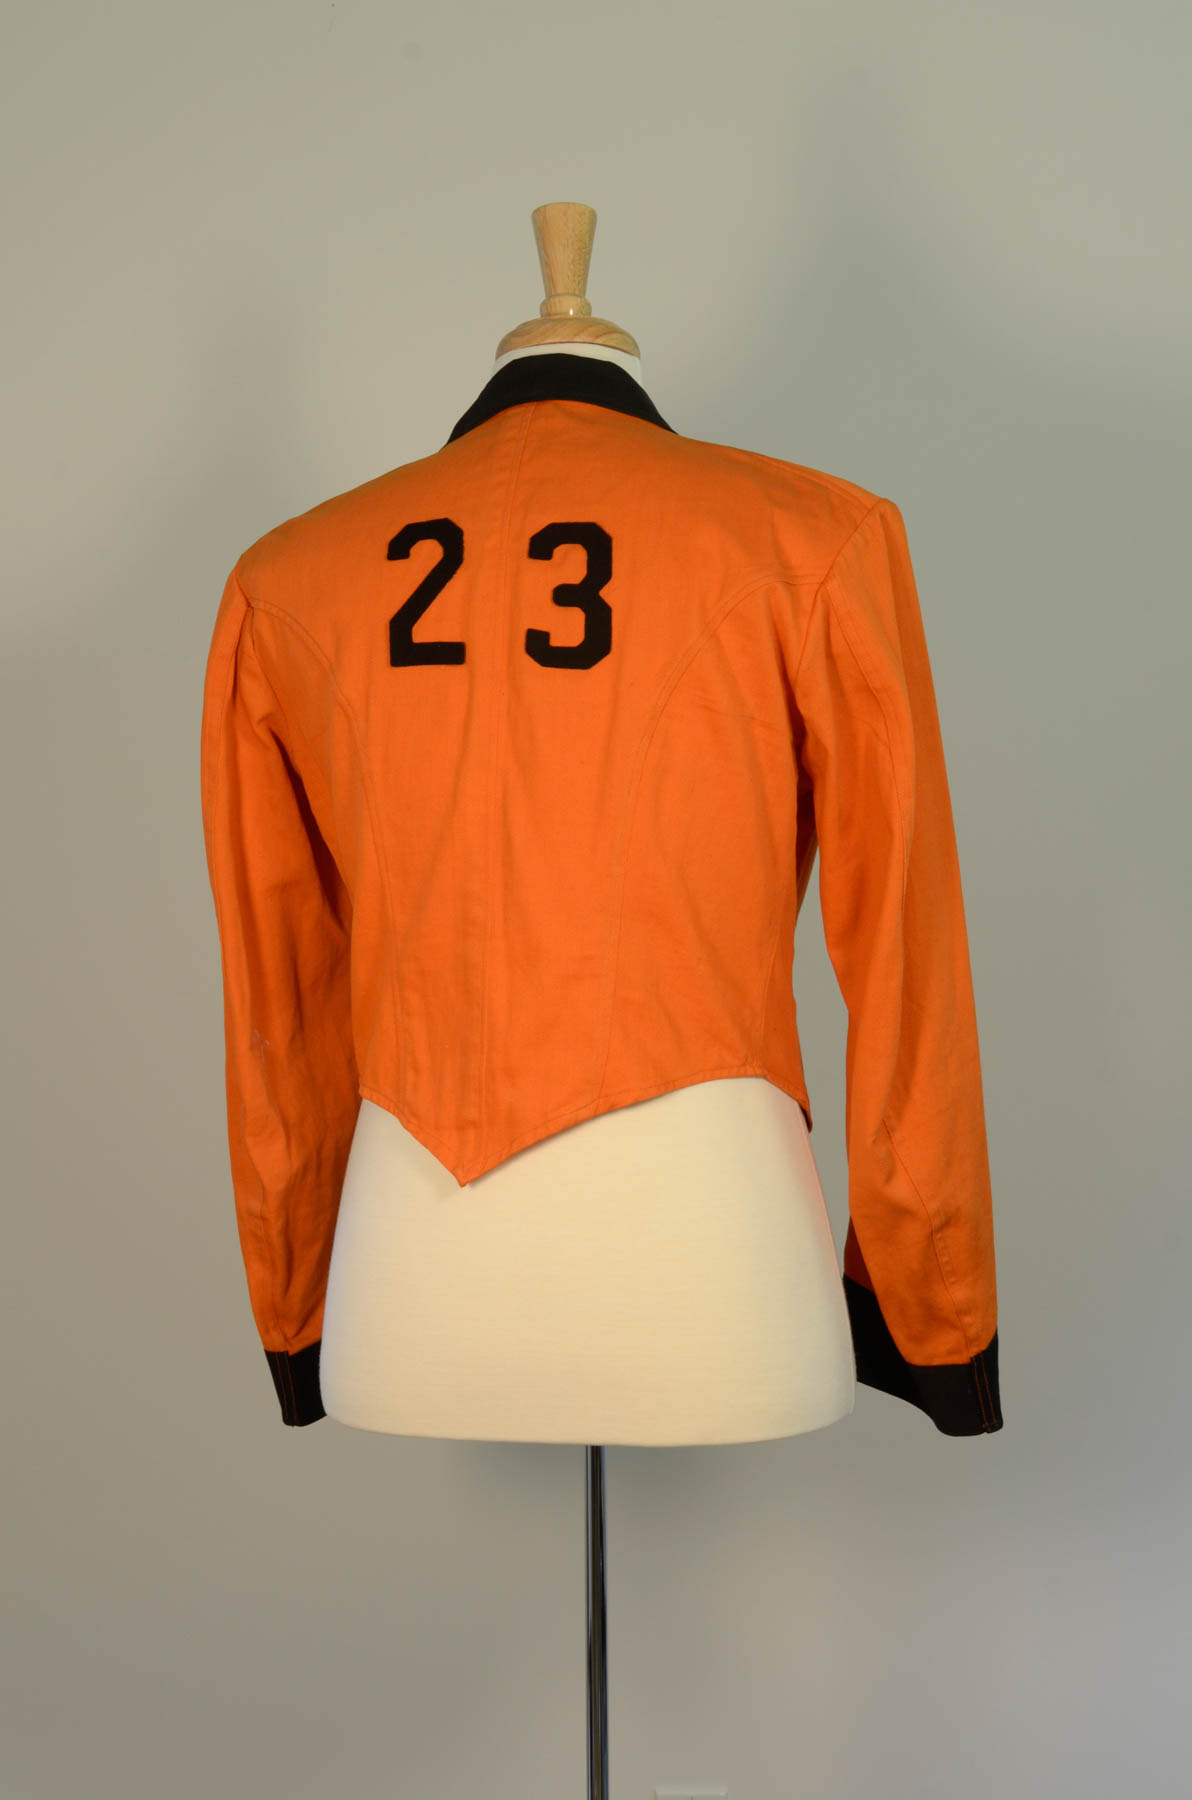 Reunion Jacket 1923 Variation 2 Rear